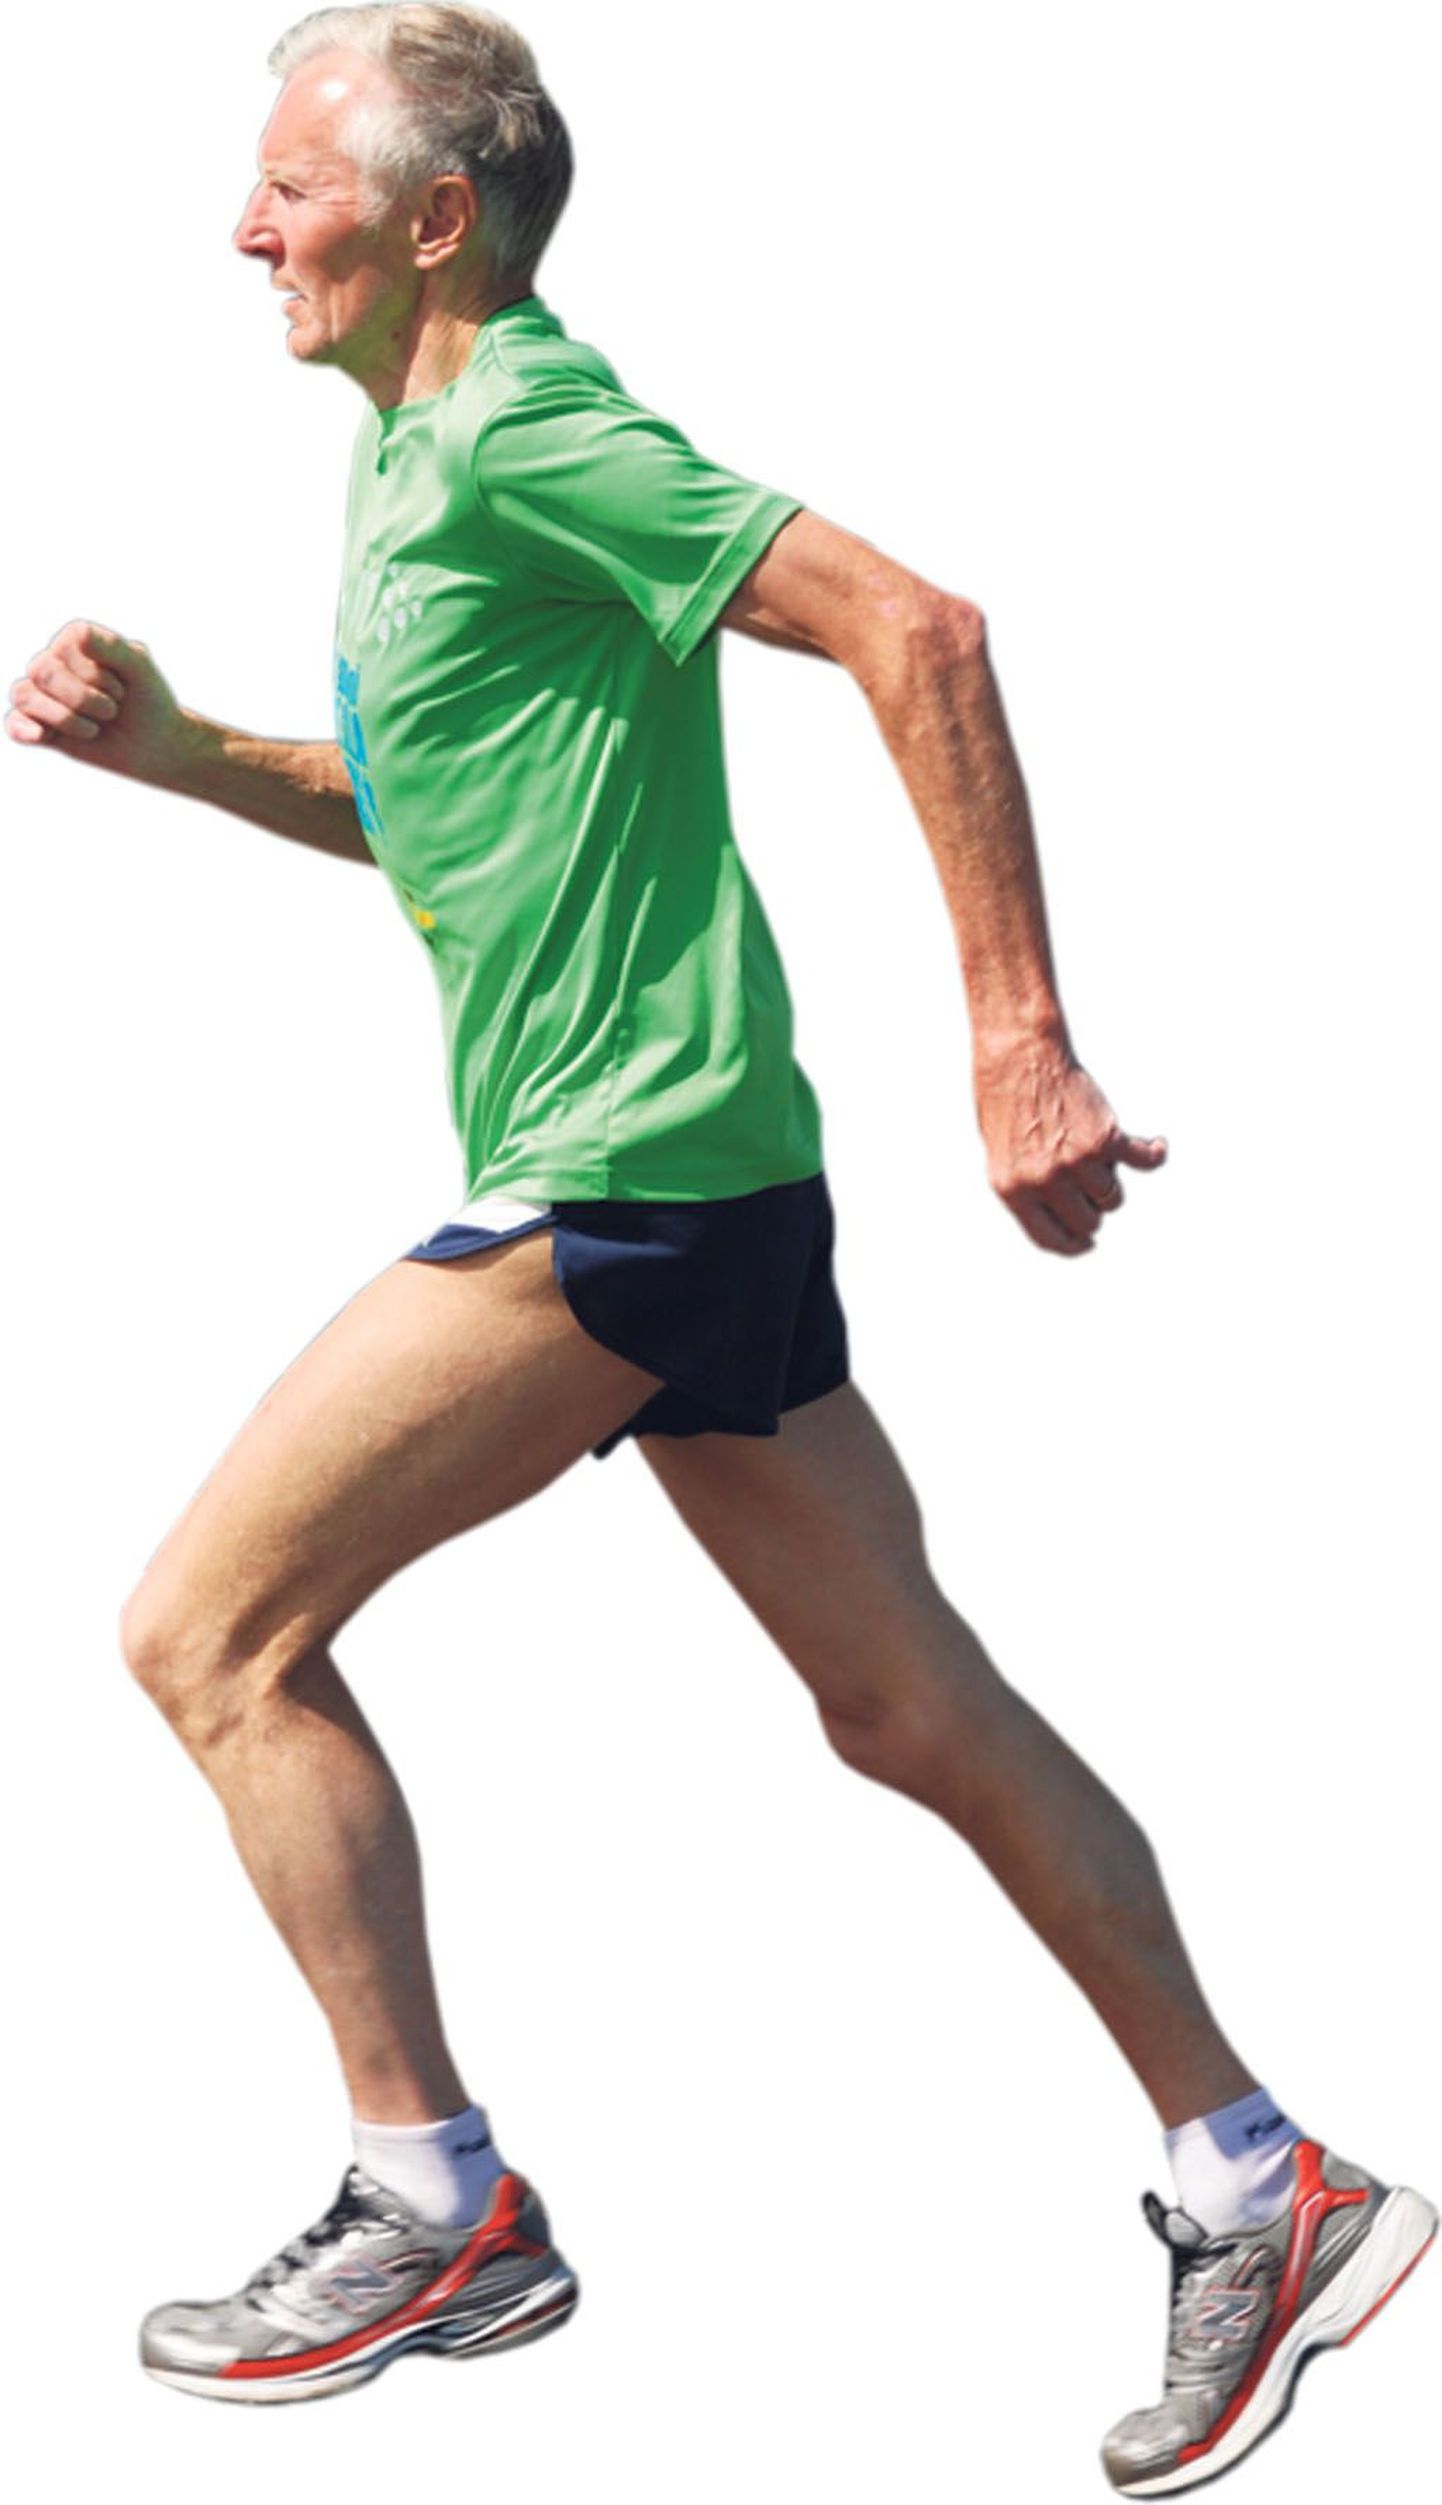 Kuus 250-300 kilomeetrit jooksev 66aastane Jüri Leesmäe kutsus tänavu ellu võidupüha maratoni Torist Pärnusse, mida spordisõbrad peavad Eesti kõige maalilisemaks maratonirajaks.